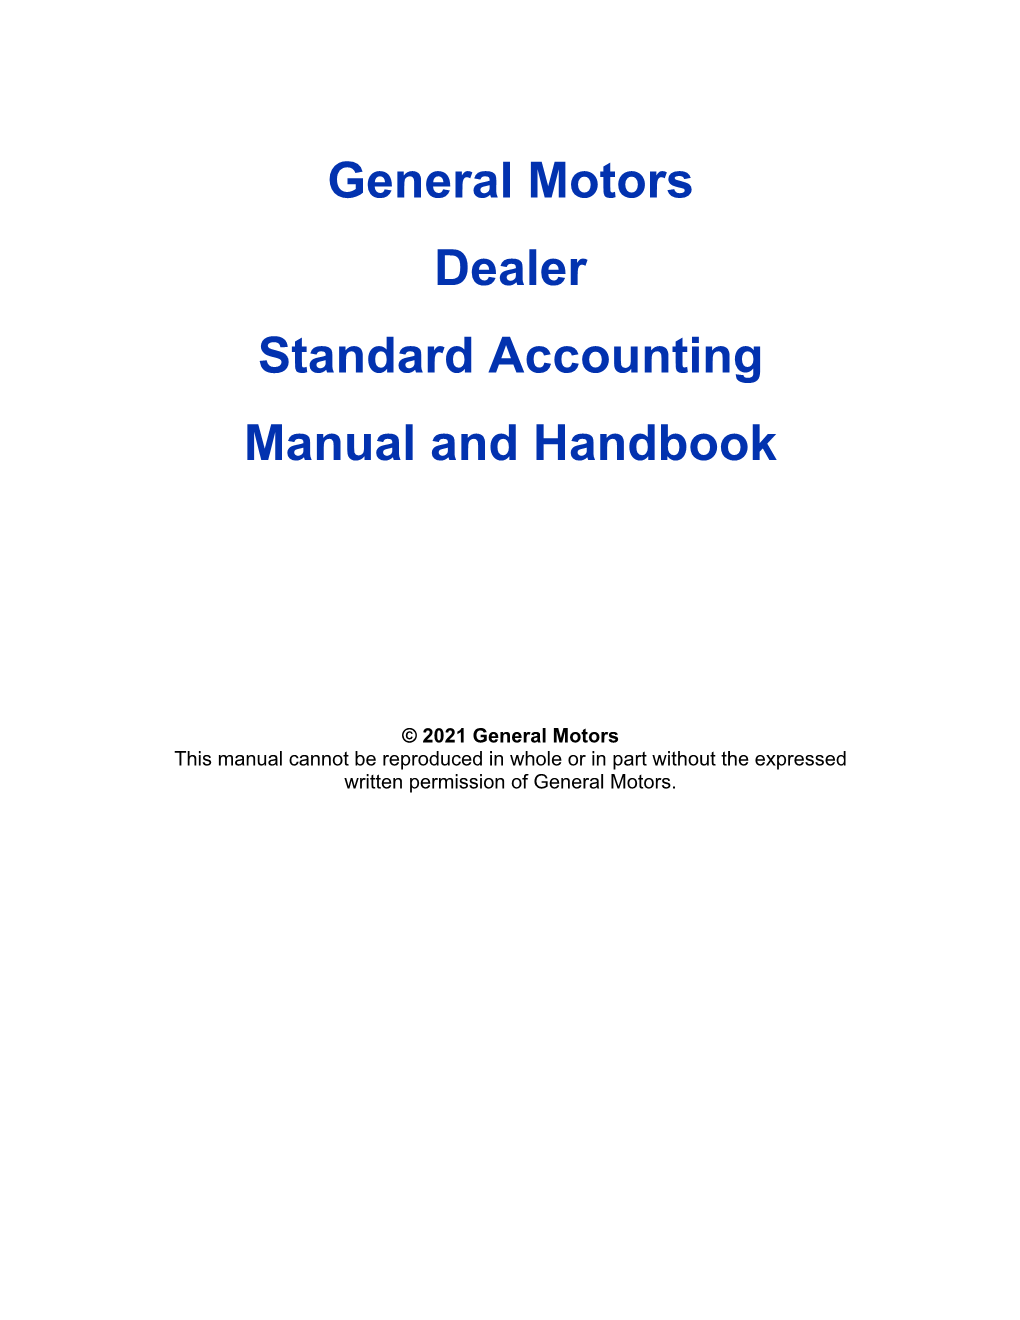 General Motors Dealer Standard Accounting Manual and Handbook